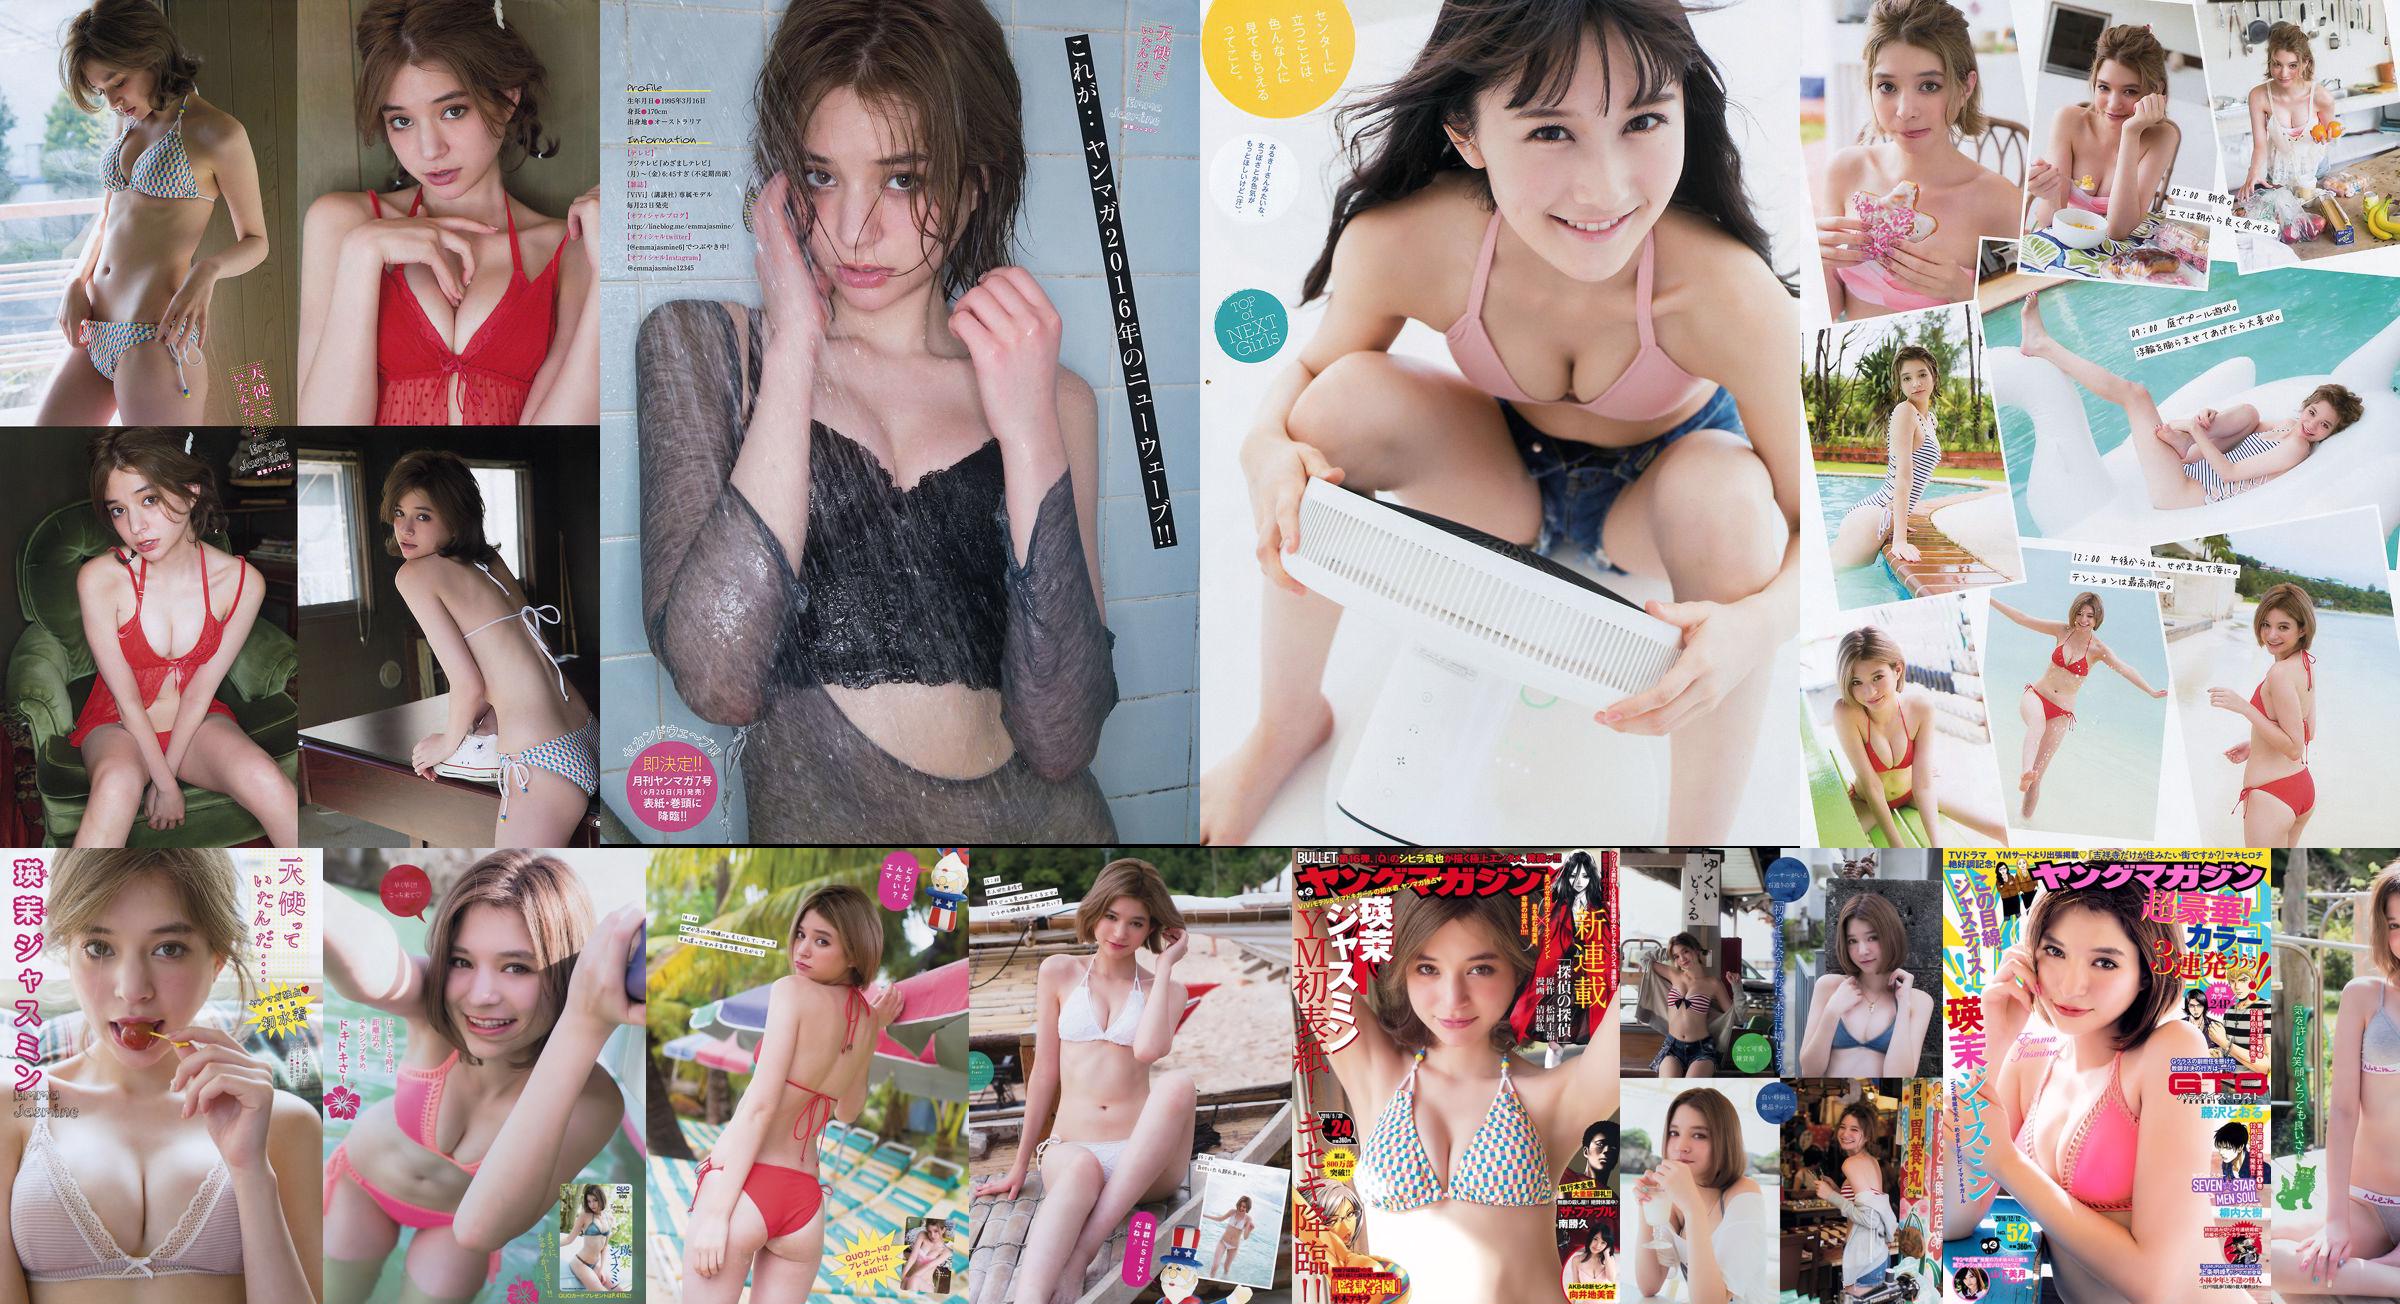 [Young Magazine] Emma Jasmine Mizuki Yamashita 2016 Nr. 52 Foto No.ea5720 Seite 1